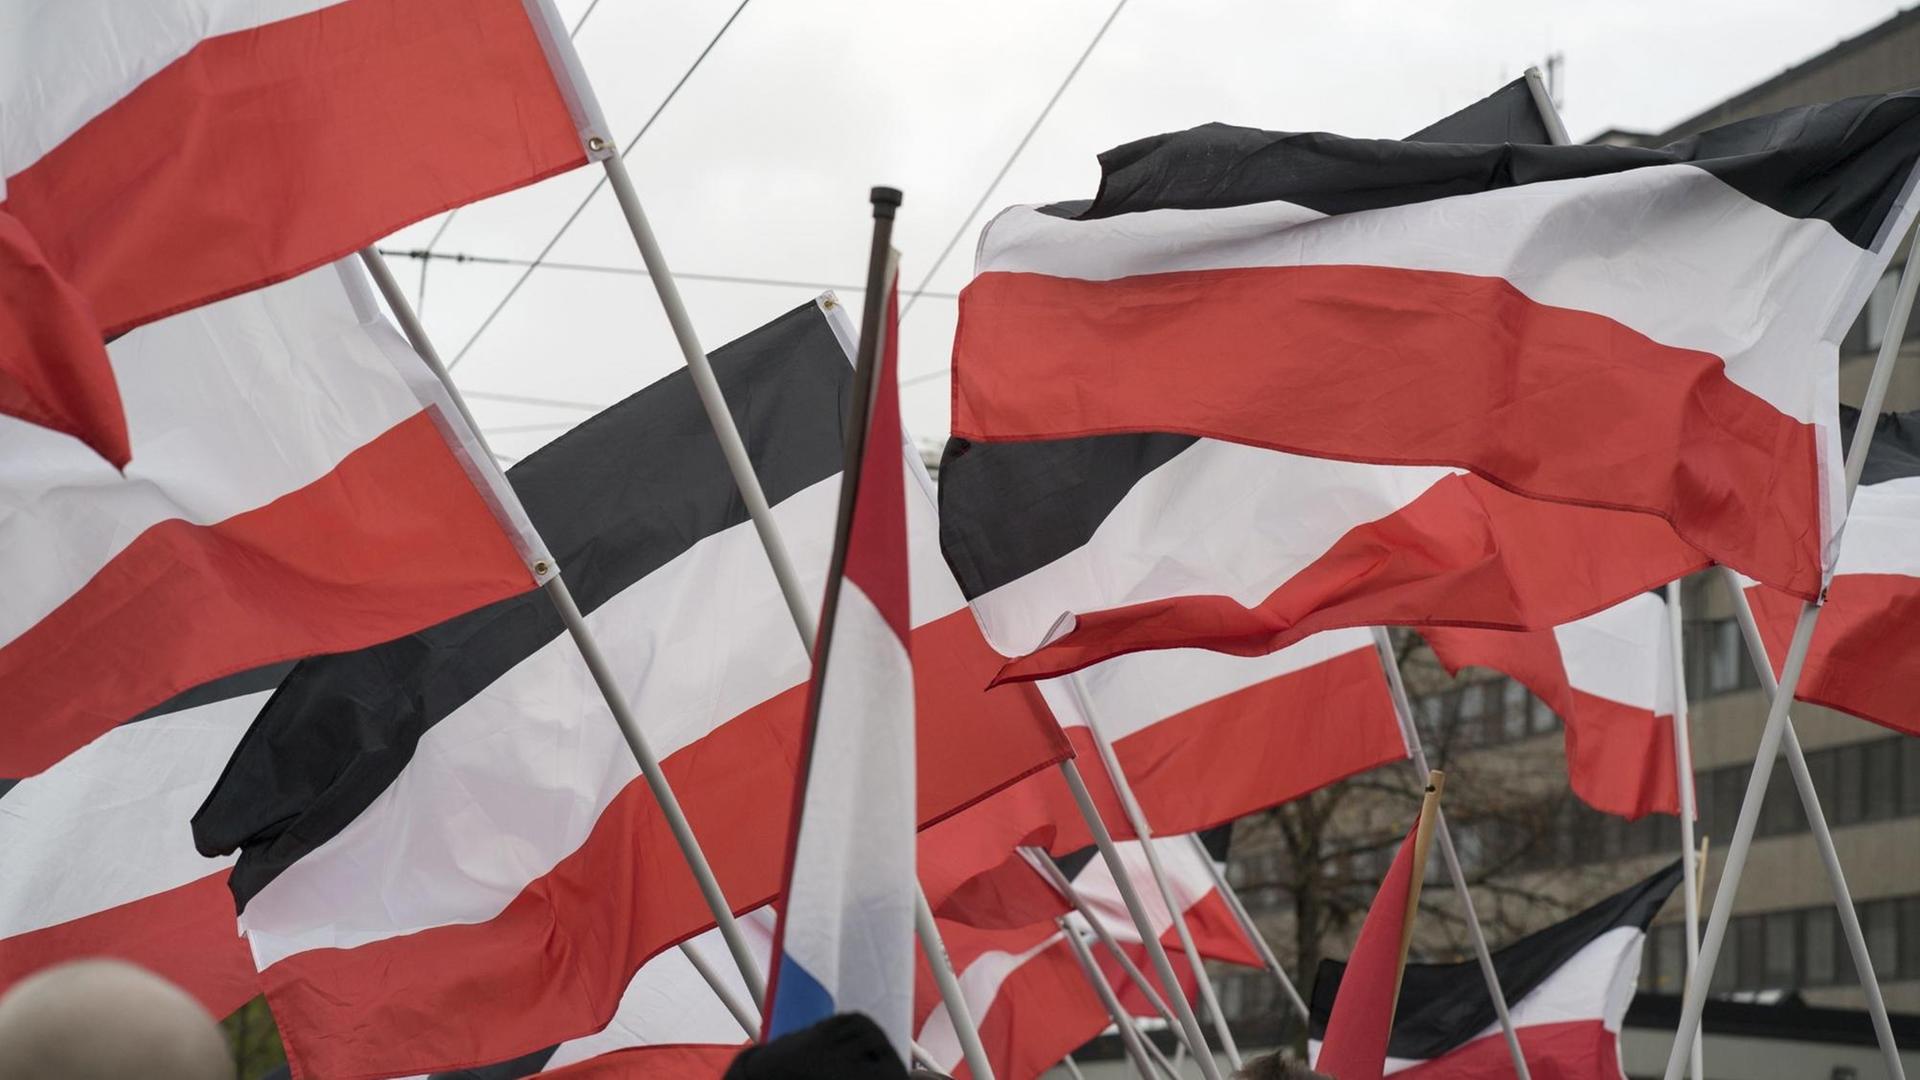 Schwarz-weiß-rote Reichsflaggen bei einer Kundgebung der Neonazi-Partei "Die Rechte" in Bielefeld.